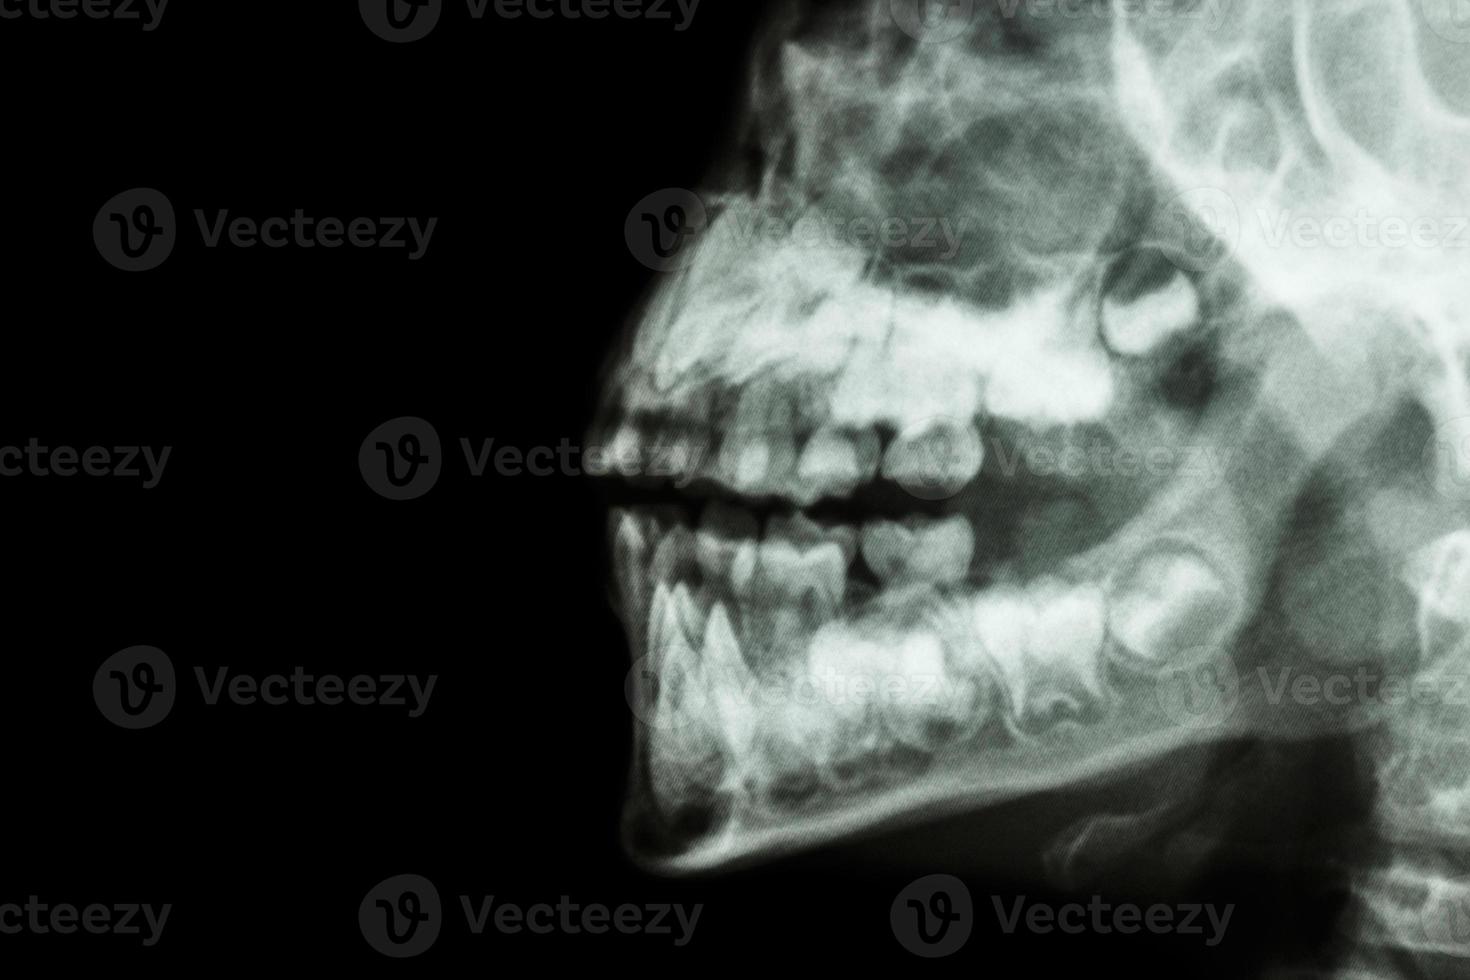 filma röntgenmänniskans käke och tänder och tomt område på vänster sida foto